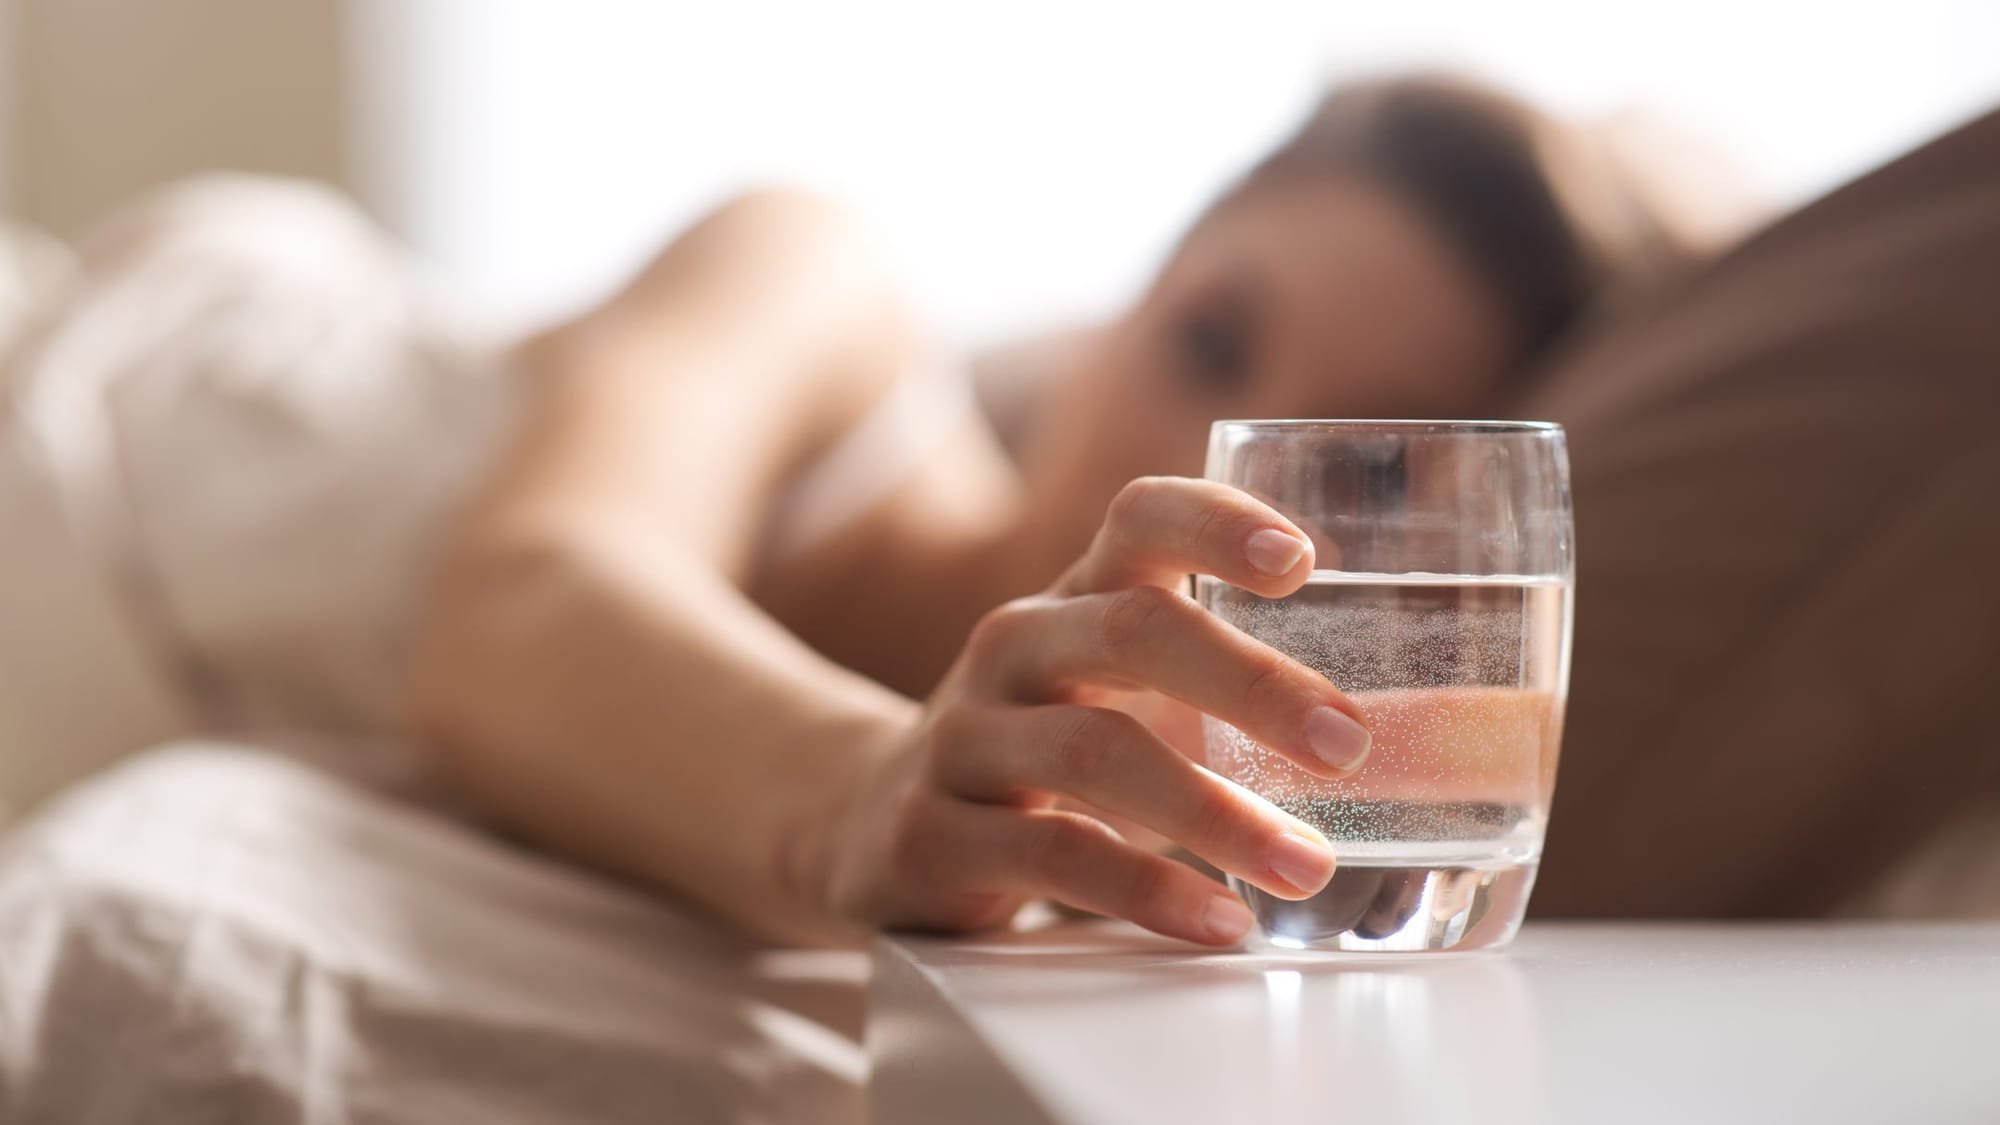 دراسة: الماء قد يكون العلاج الأمثل للصداع بدلا من الأدوية